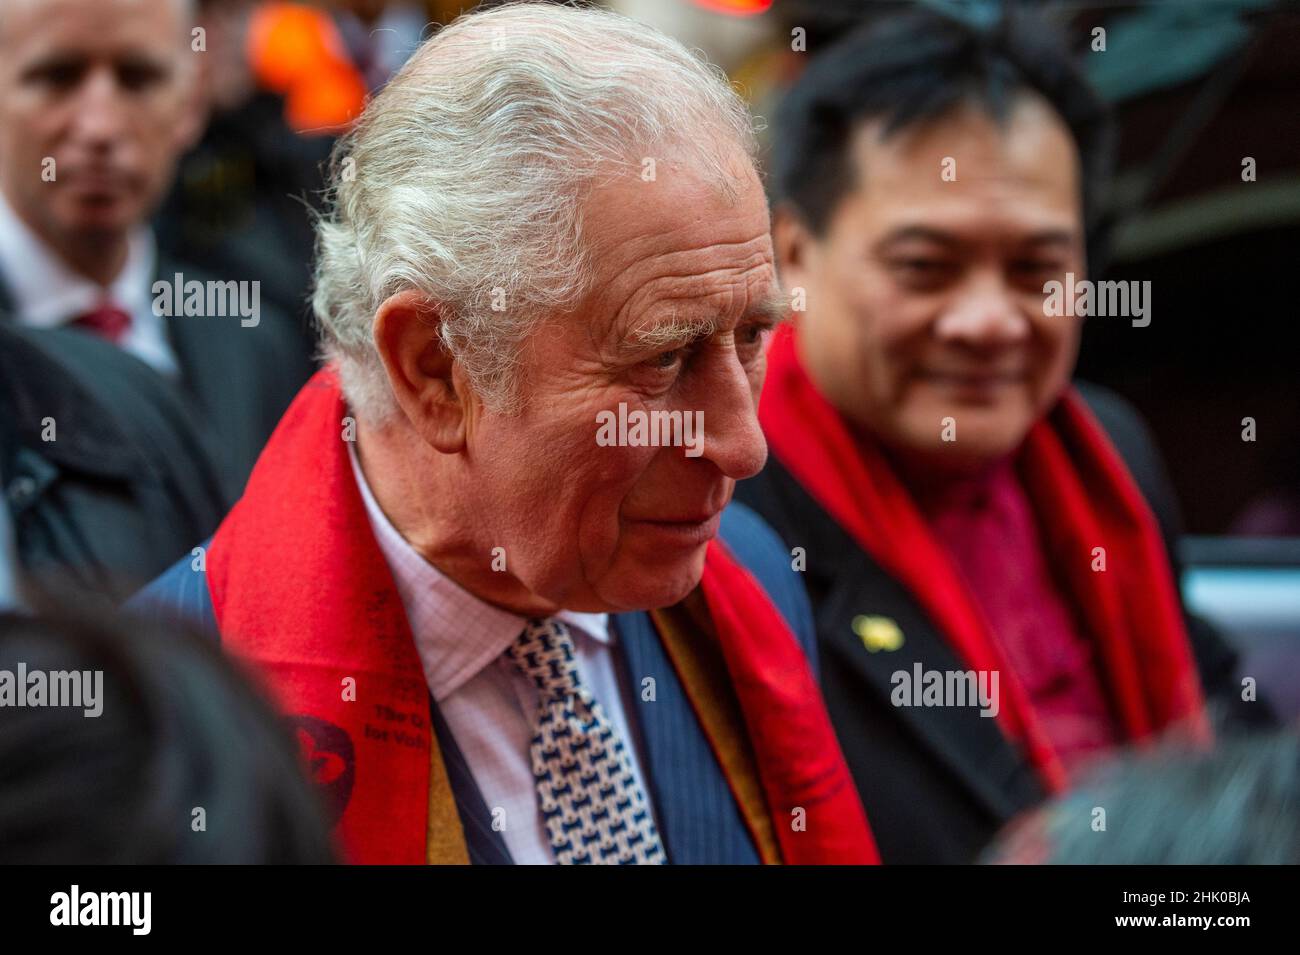 Londres, Royaume-Uni.1 février 2022.Le Prince de Galles rencontre des foules à Chinatown lors d'une visite pour célébrer le nouvel an lunaire, l'année du tigre.Credit: Stephen Chung / Alamy Live News Banque D'Images